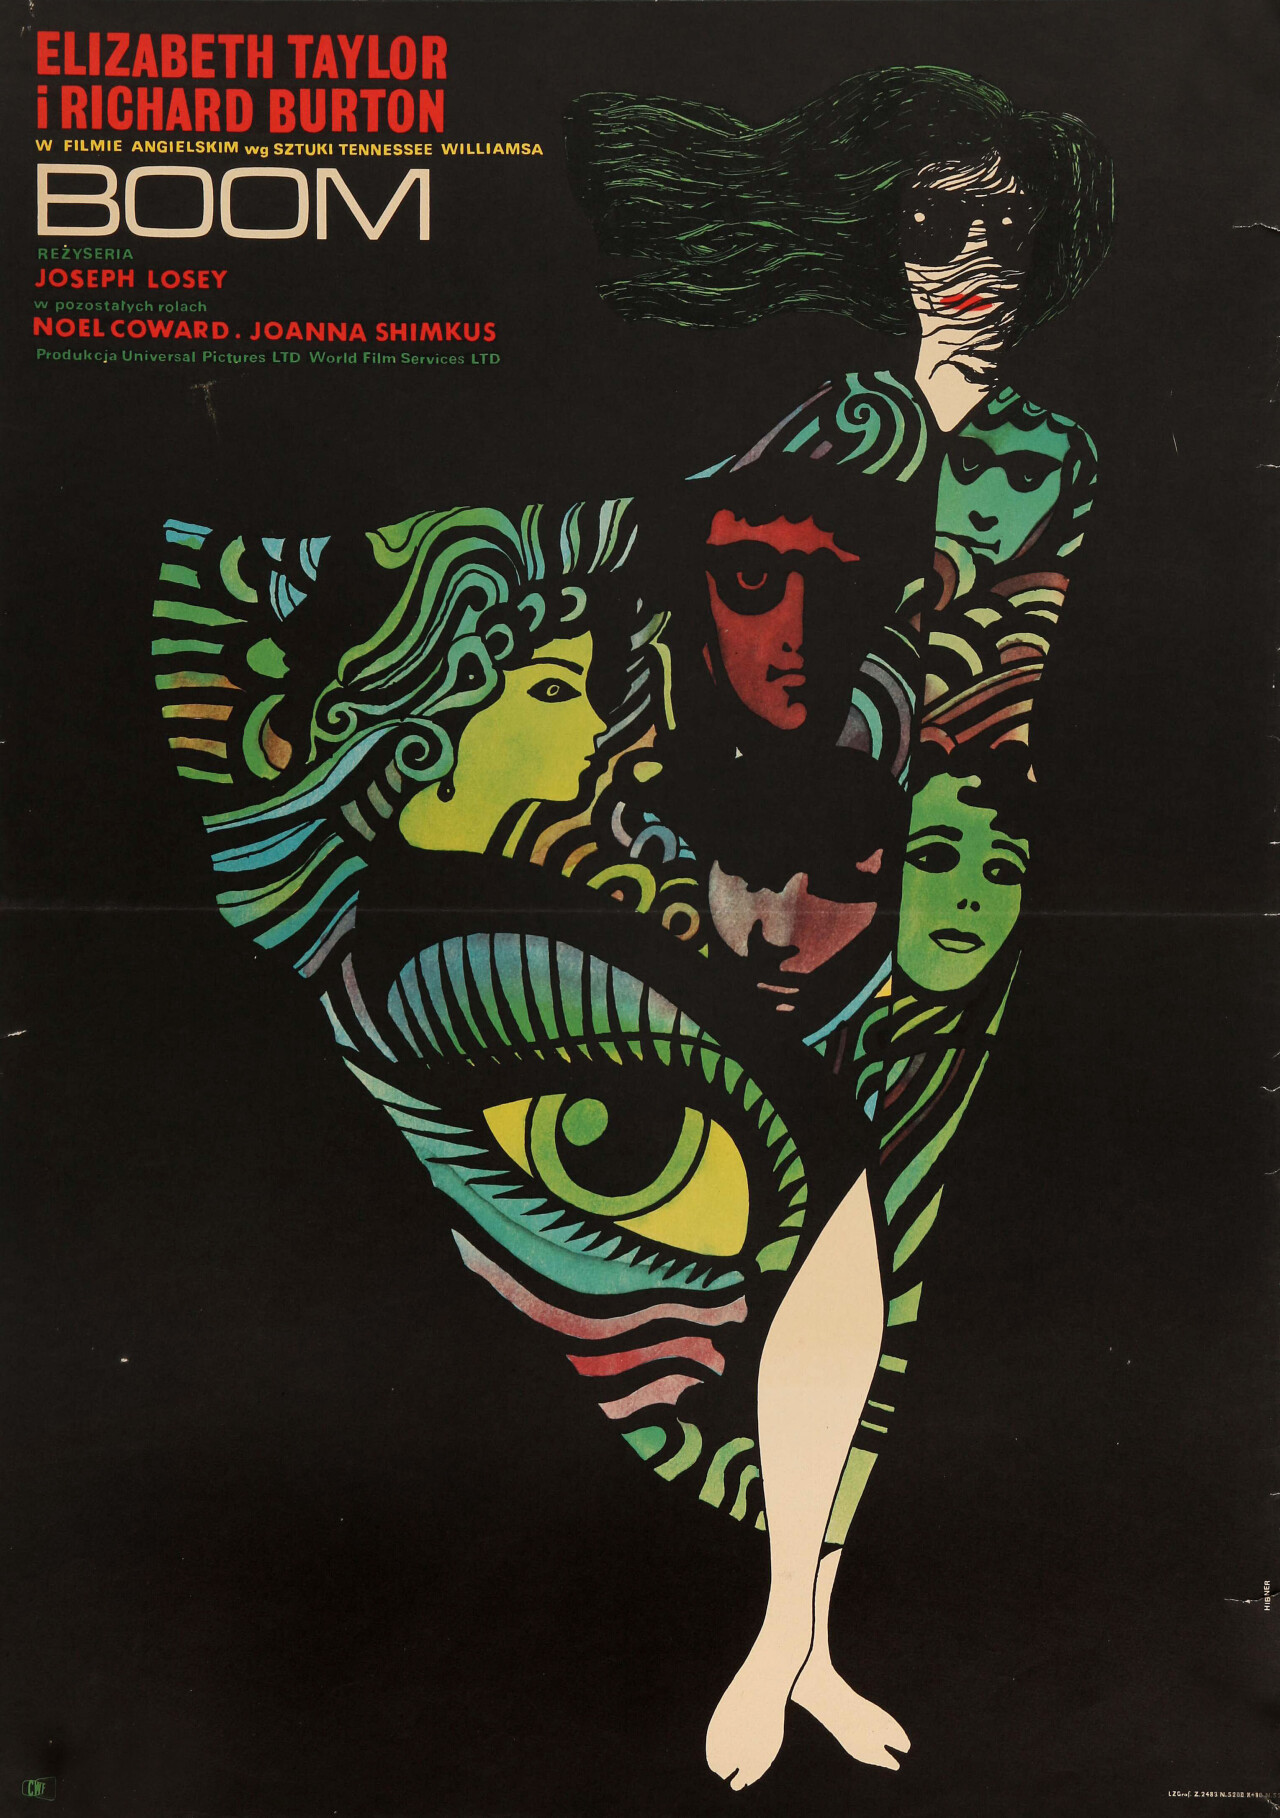 Бум (Boom!, 1968), режиссёр Джозеф Лоузи, польский постер к фильму, автор Мацей Хибнер (графический дизайн, 1970 год)